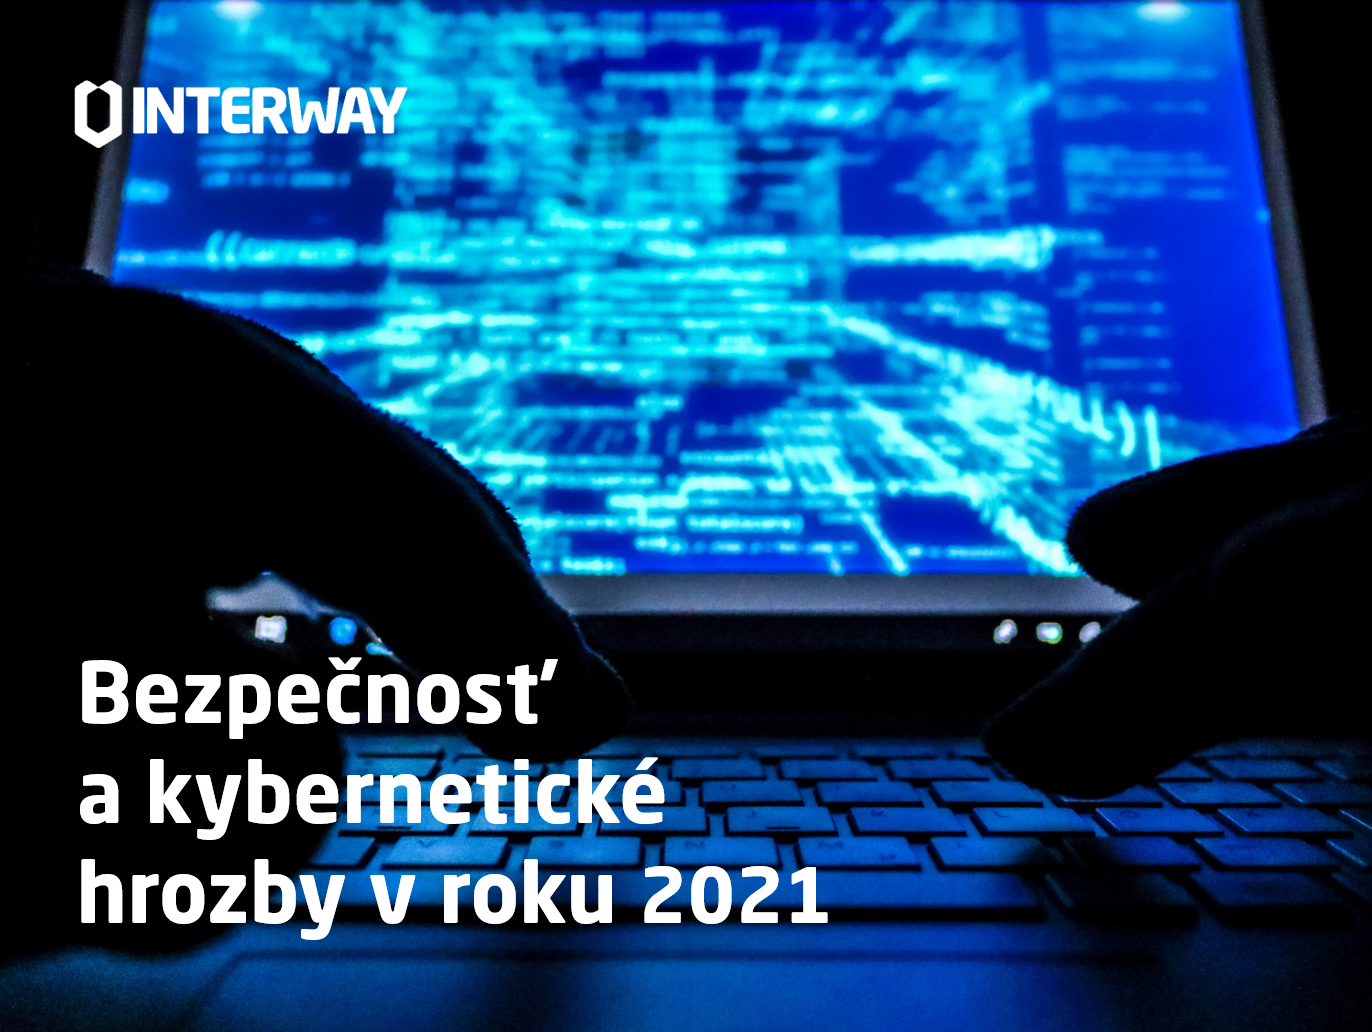 kyberneticka_bezpecnost_a_hrozby_v_roku_2021_interway